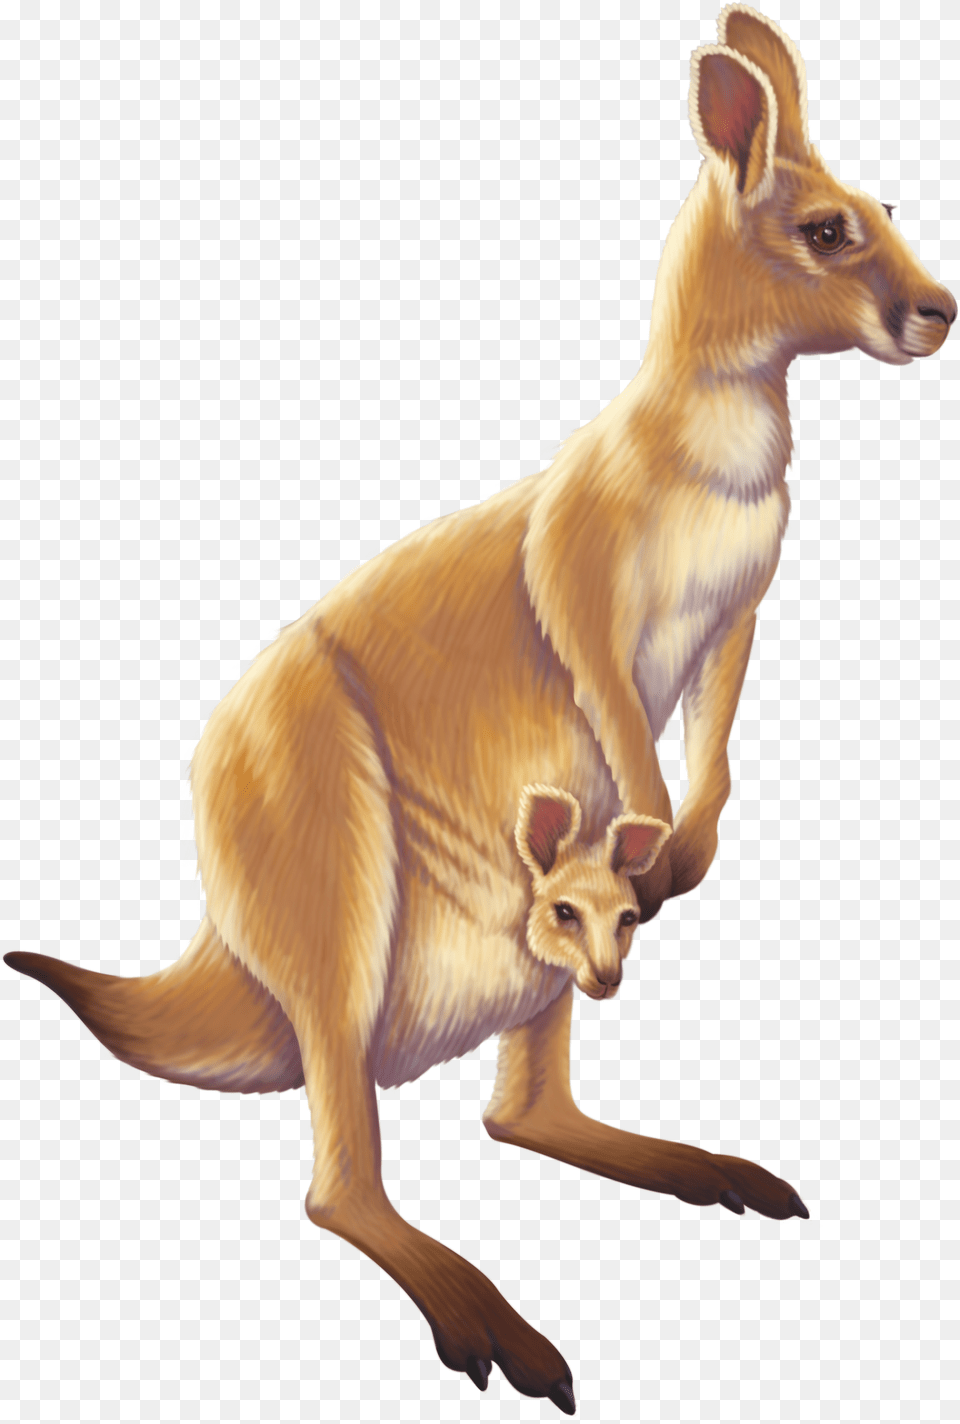 Kangaroo Australia Animal Image Hd Kangaroo, Antelope, Mammal, Wildlife Free Transparent Png